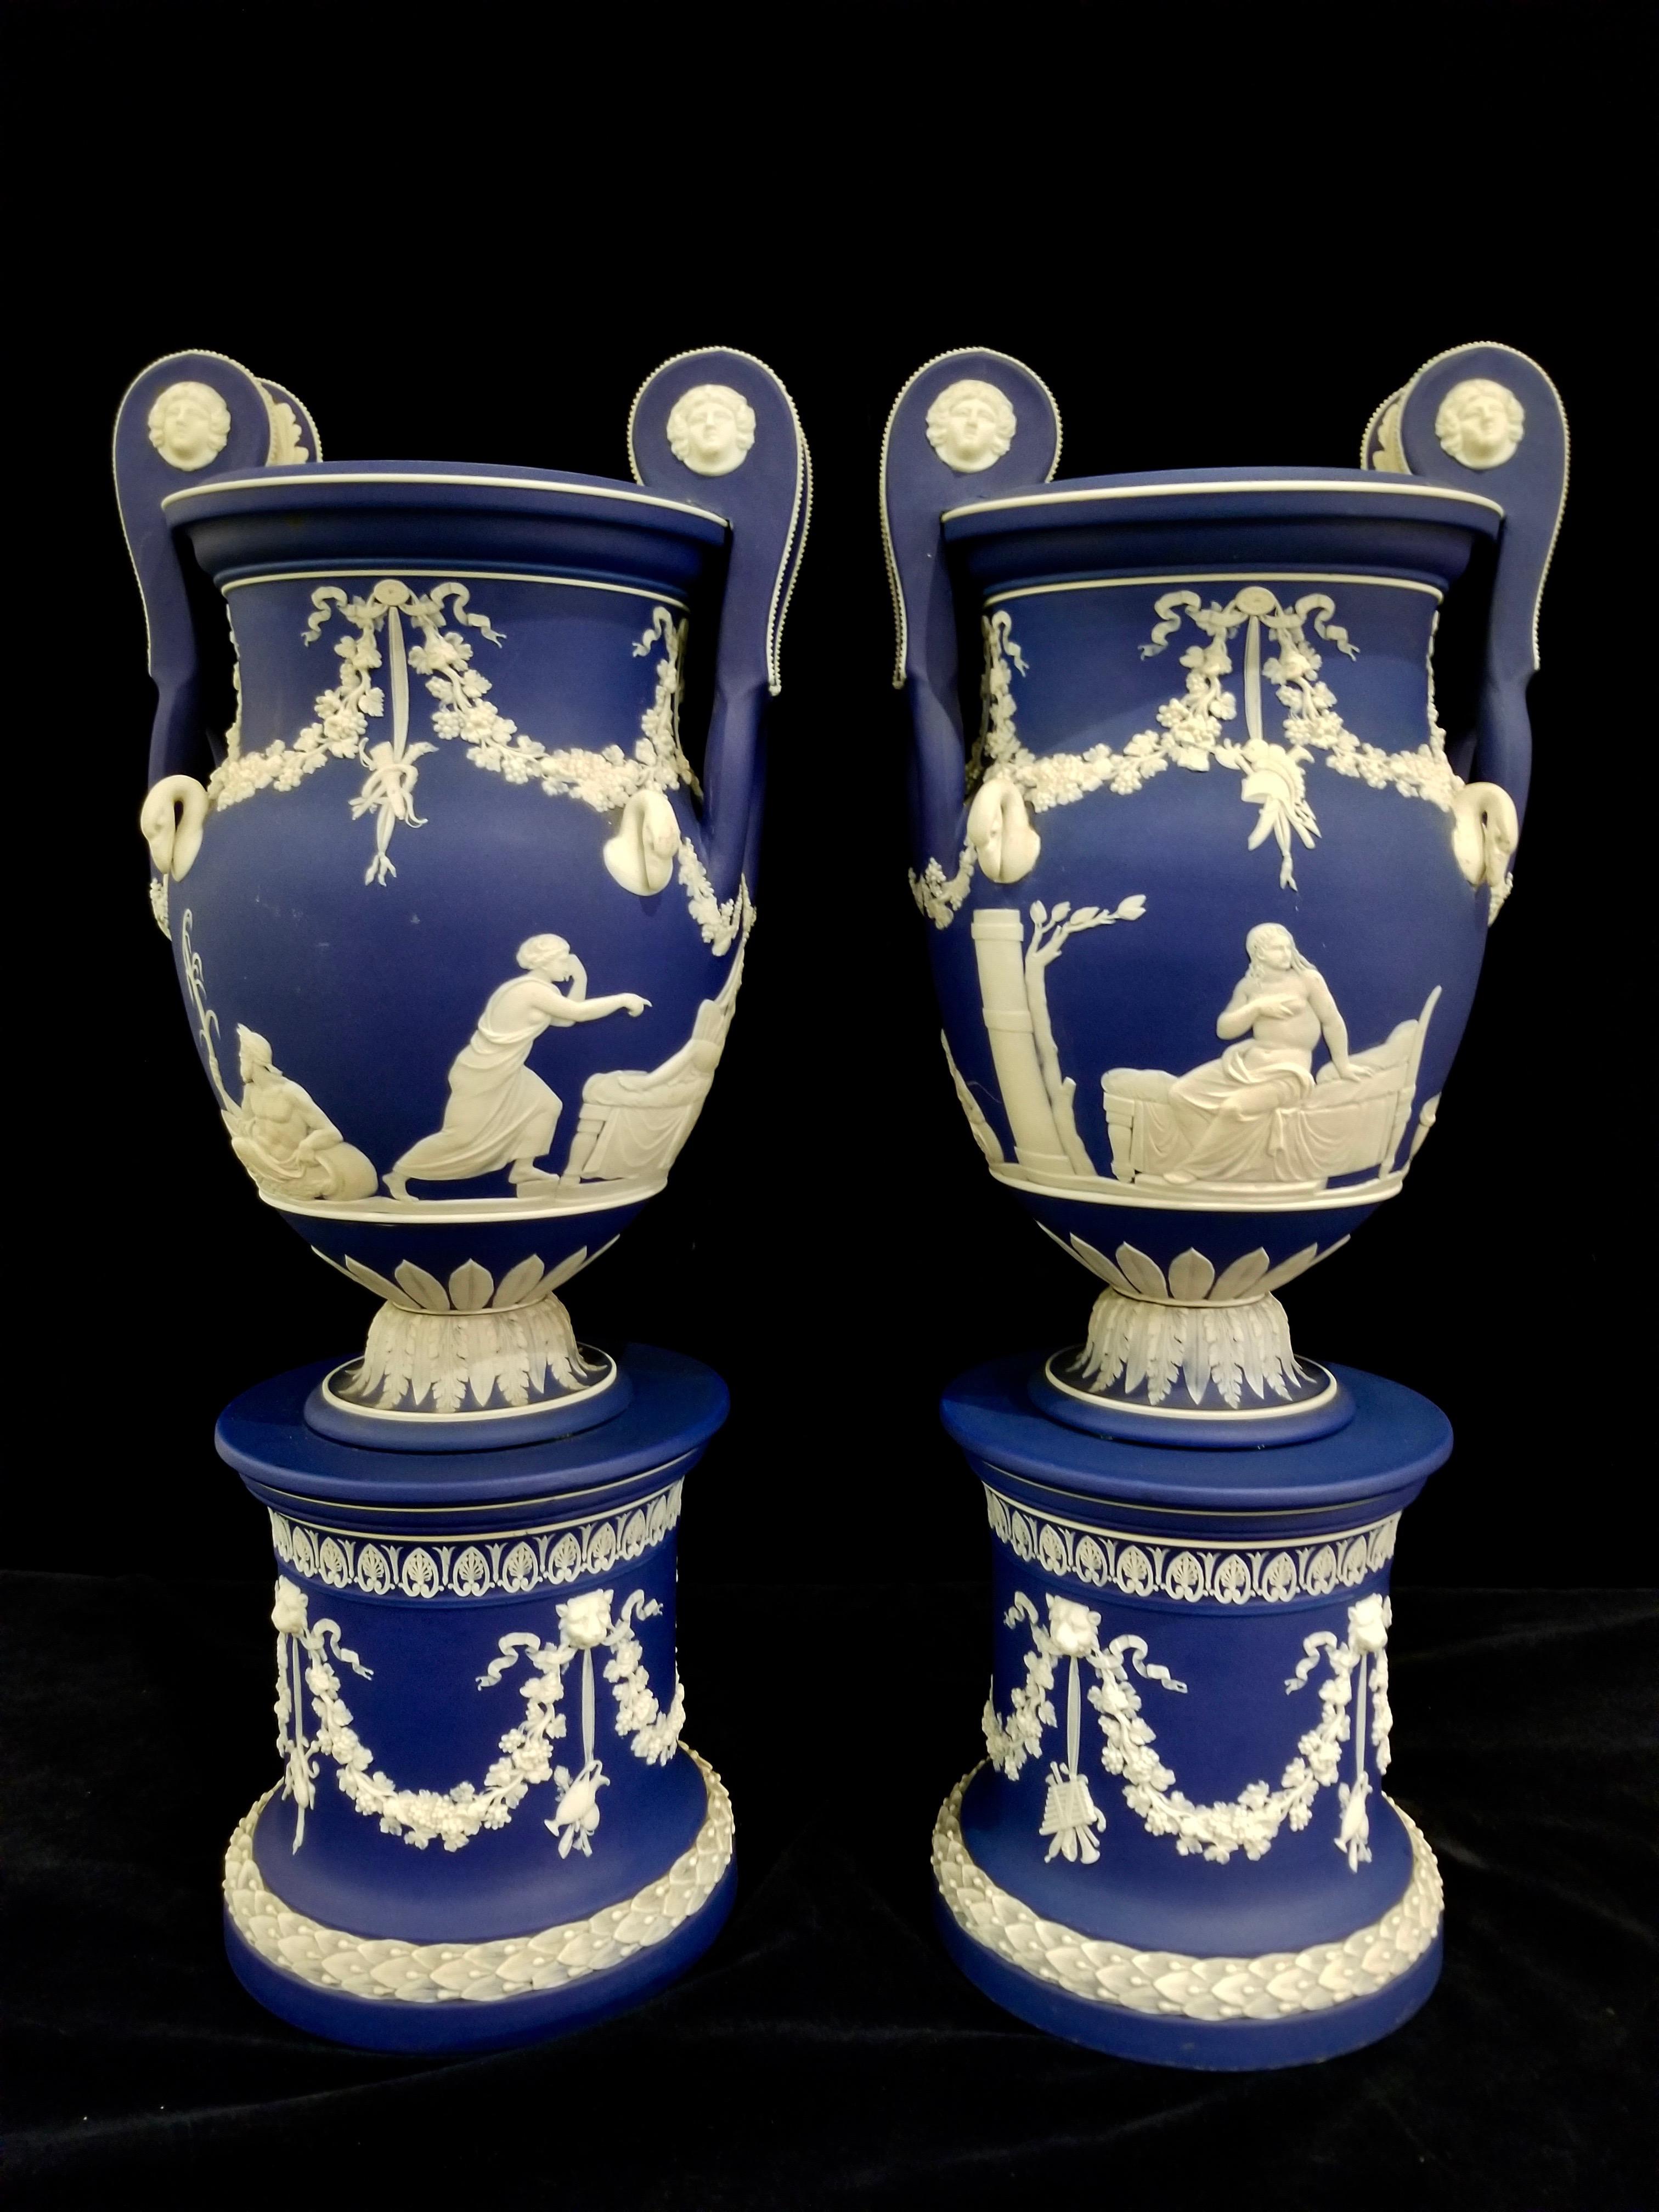 Ein exquisites und sehr seltenes Paar Wedgwood-Vasen aus Staffordshire aus dem 19. Jahrhundert mit blauem Jasperware-Grund und neoklassizistischen Motiven auf abgerundeten Sockeln, die stilistisch John Flaxman zugeschrieben werden. Jede dieser Vasen